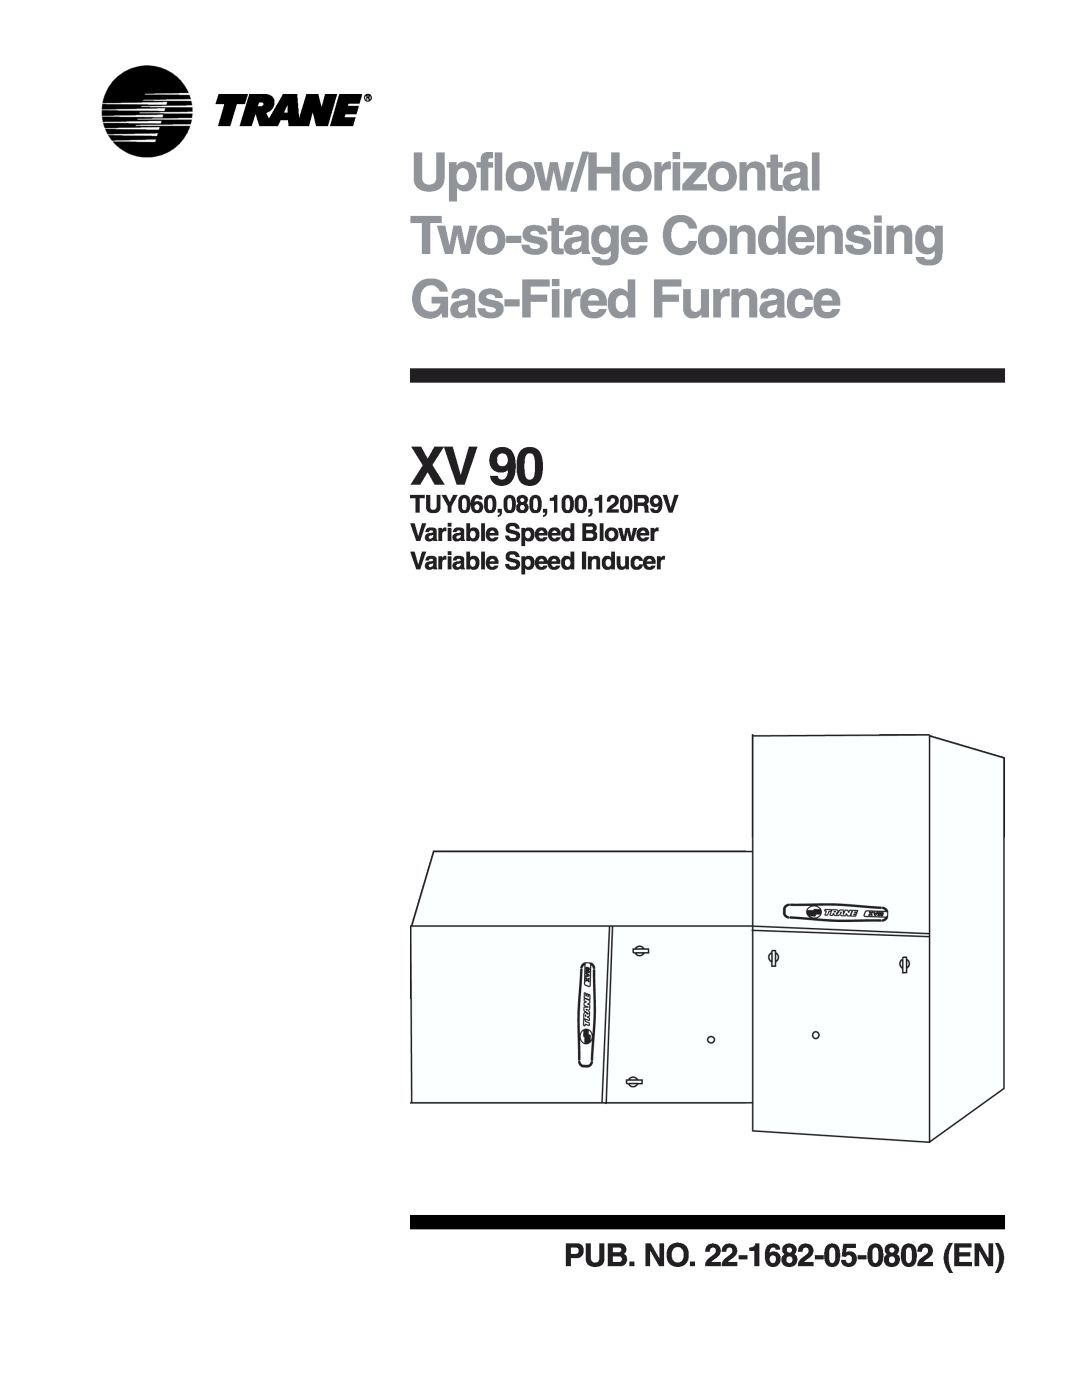 Trane XV 90, 120R9V, 100 manual Upflow/Horizontal Two-stageCondensing, Gas-FiredFurnace, PUB. NO. 22-1682-05-0802EN 